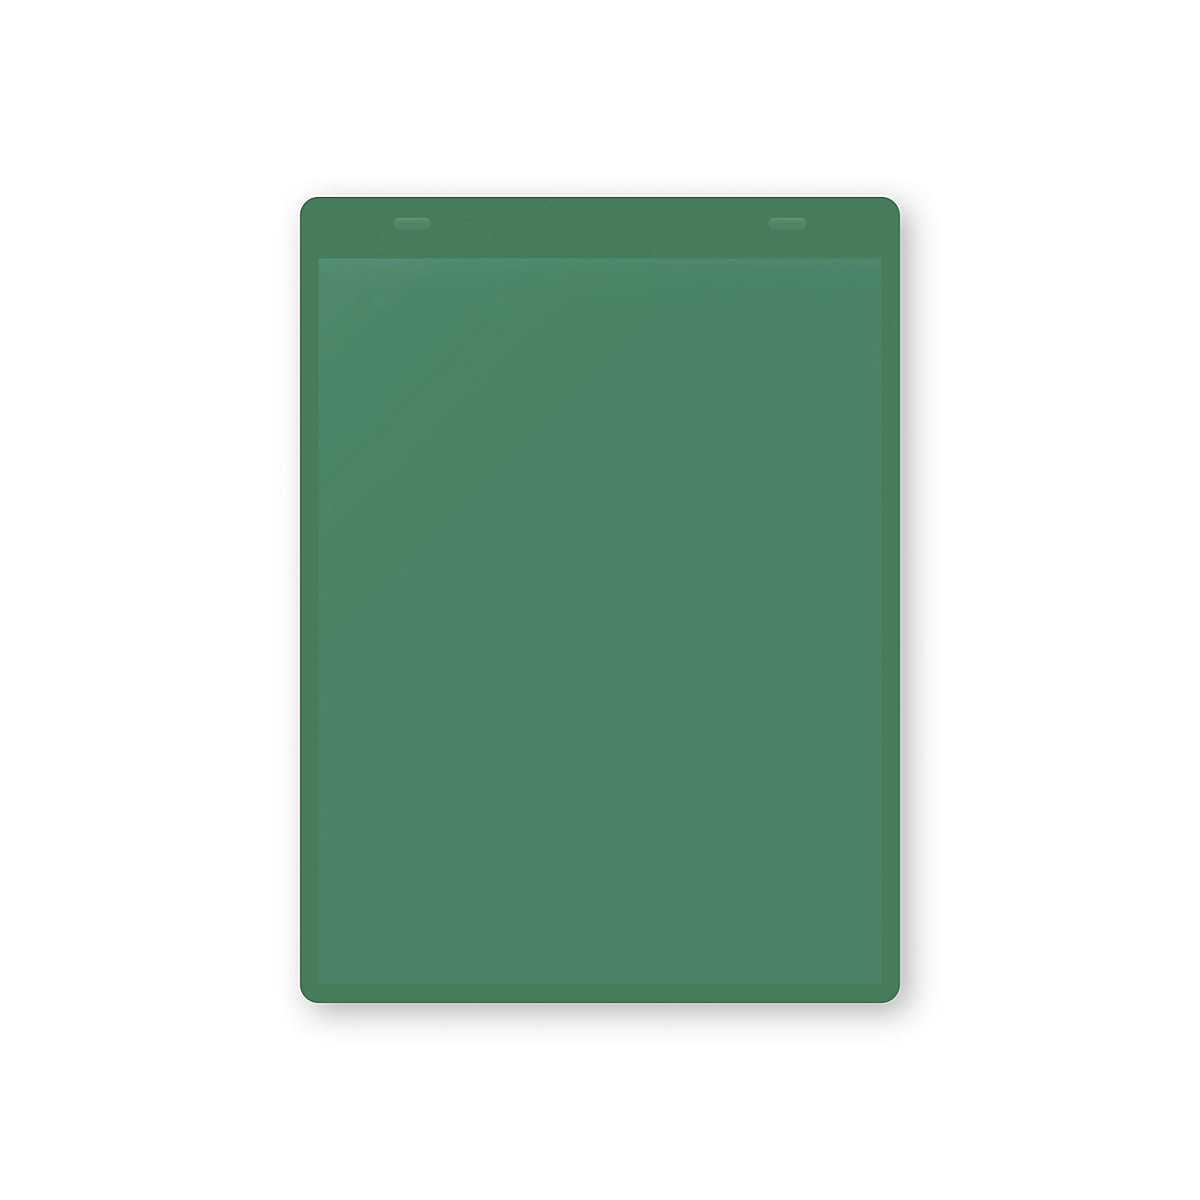 Dokumentumtartó tasakok akasztópánttal, DIN A5, álló, cs. e. 10 db, zöld